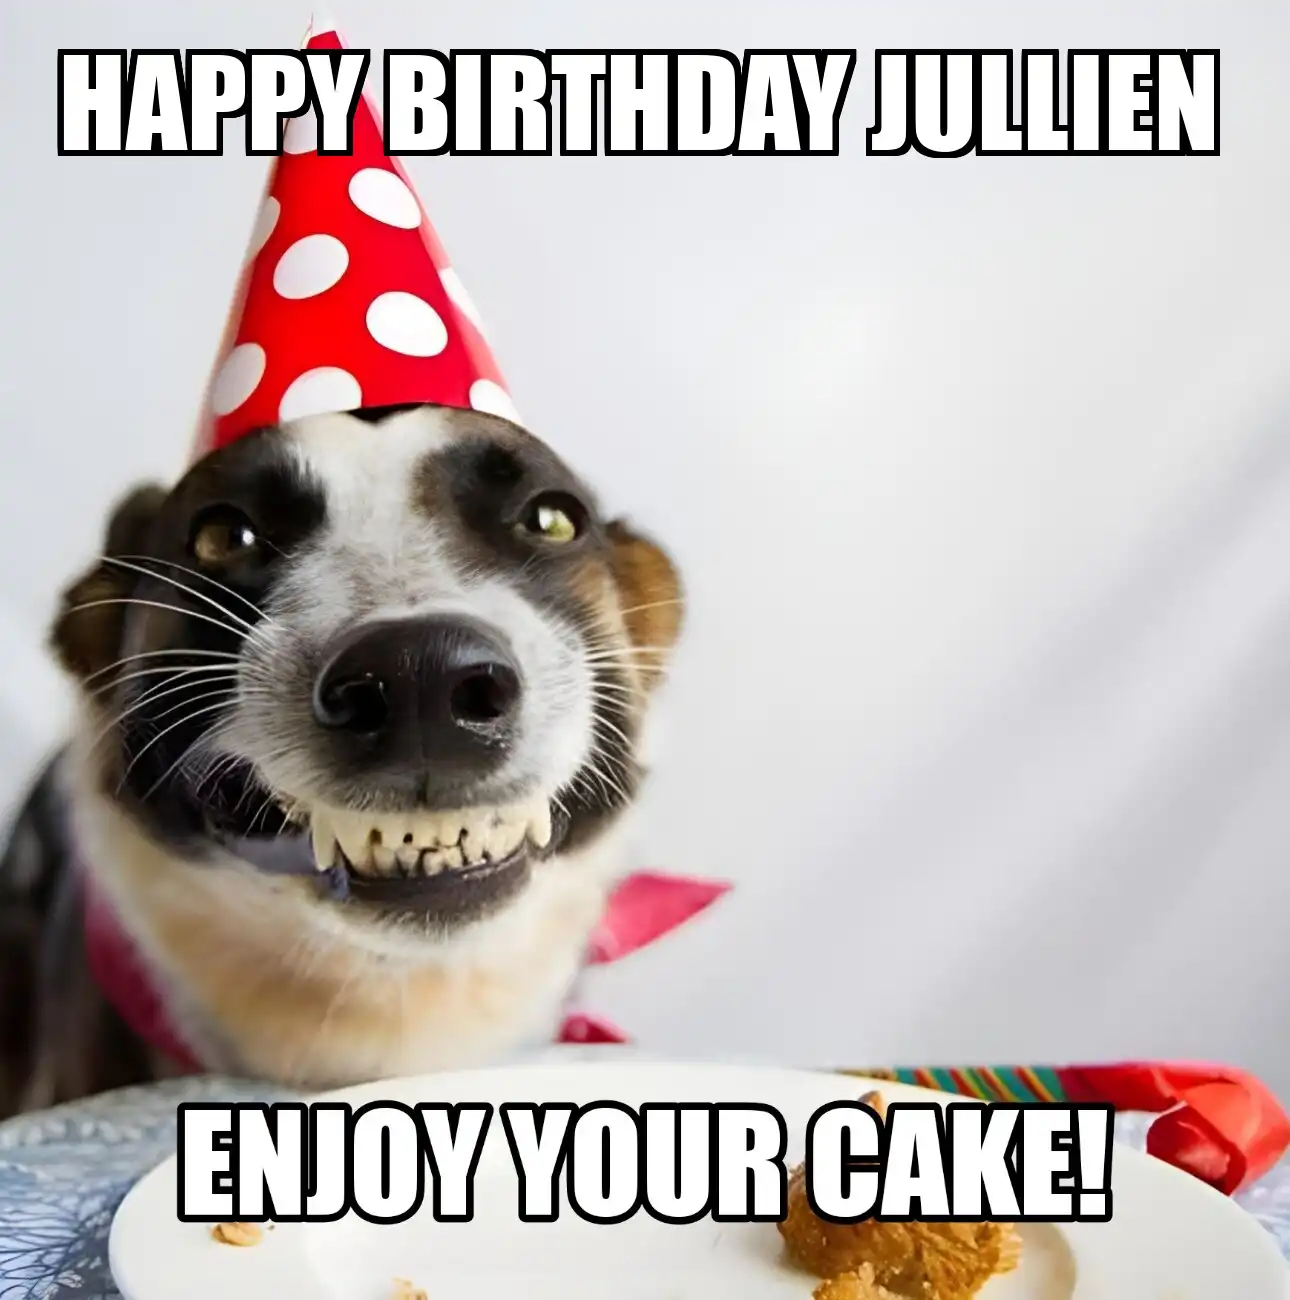 Happy Birthday Jullien Enjoy Your Cake Dog Meme